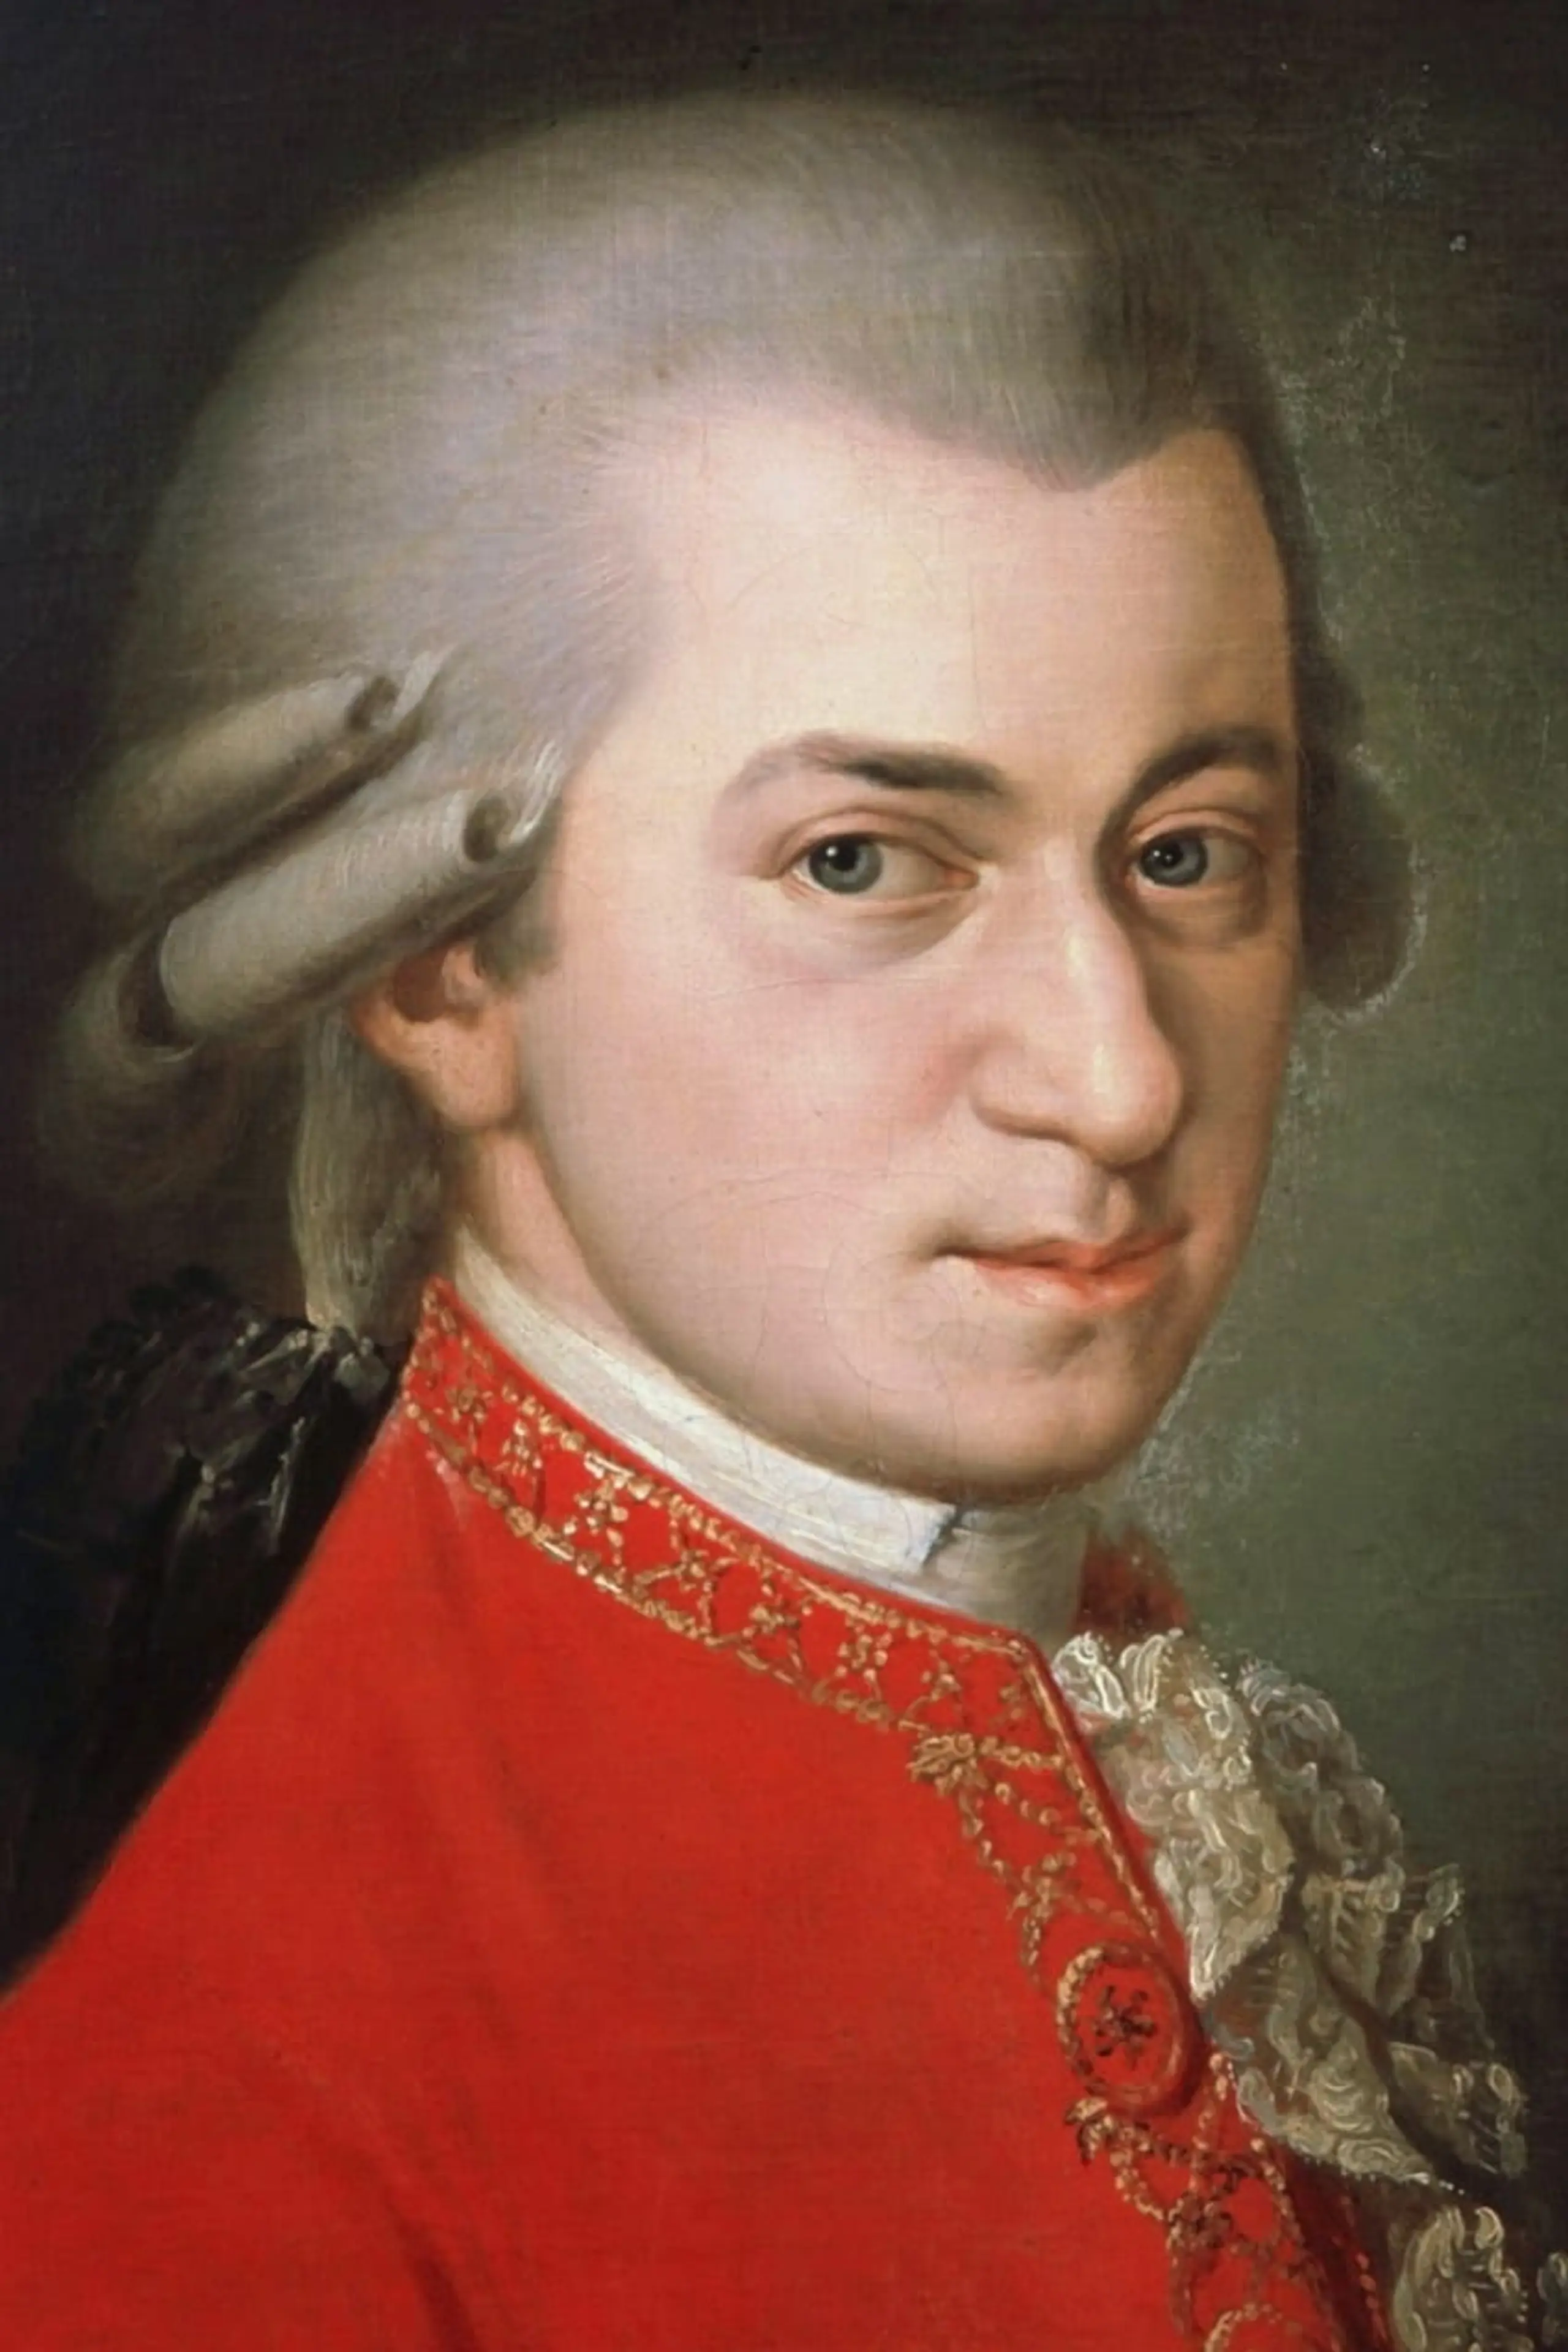 Foto von Wolfgang Amadeus Mozart